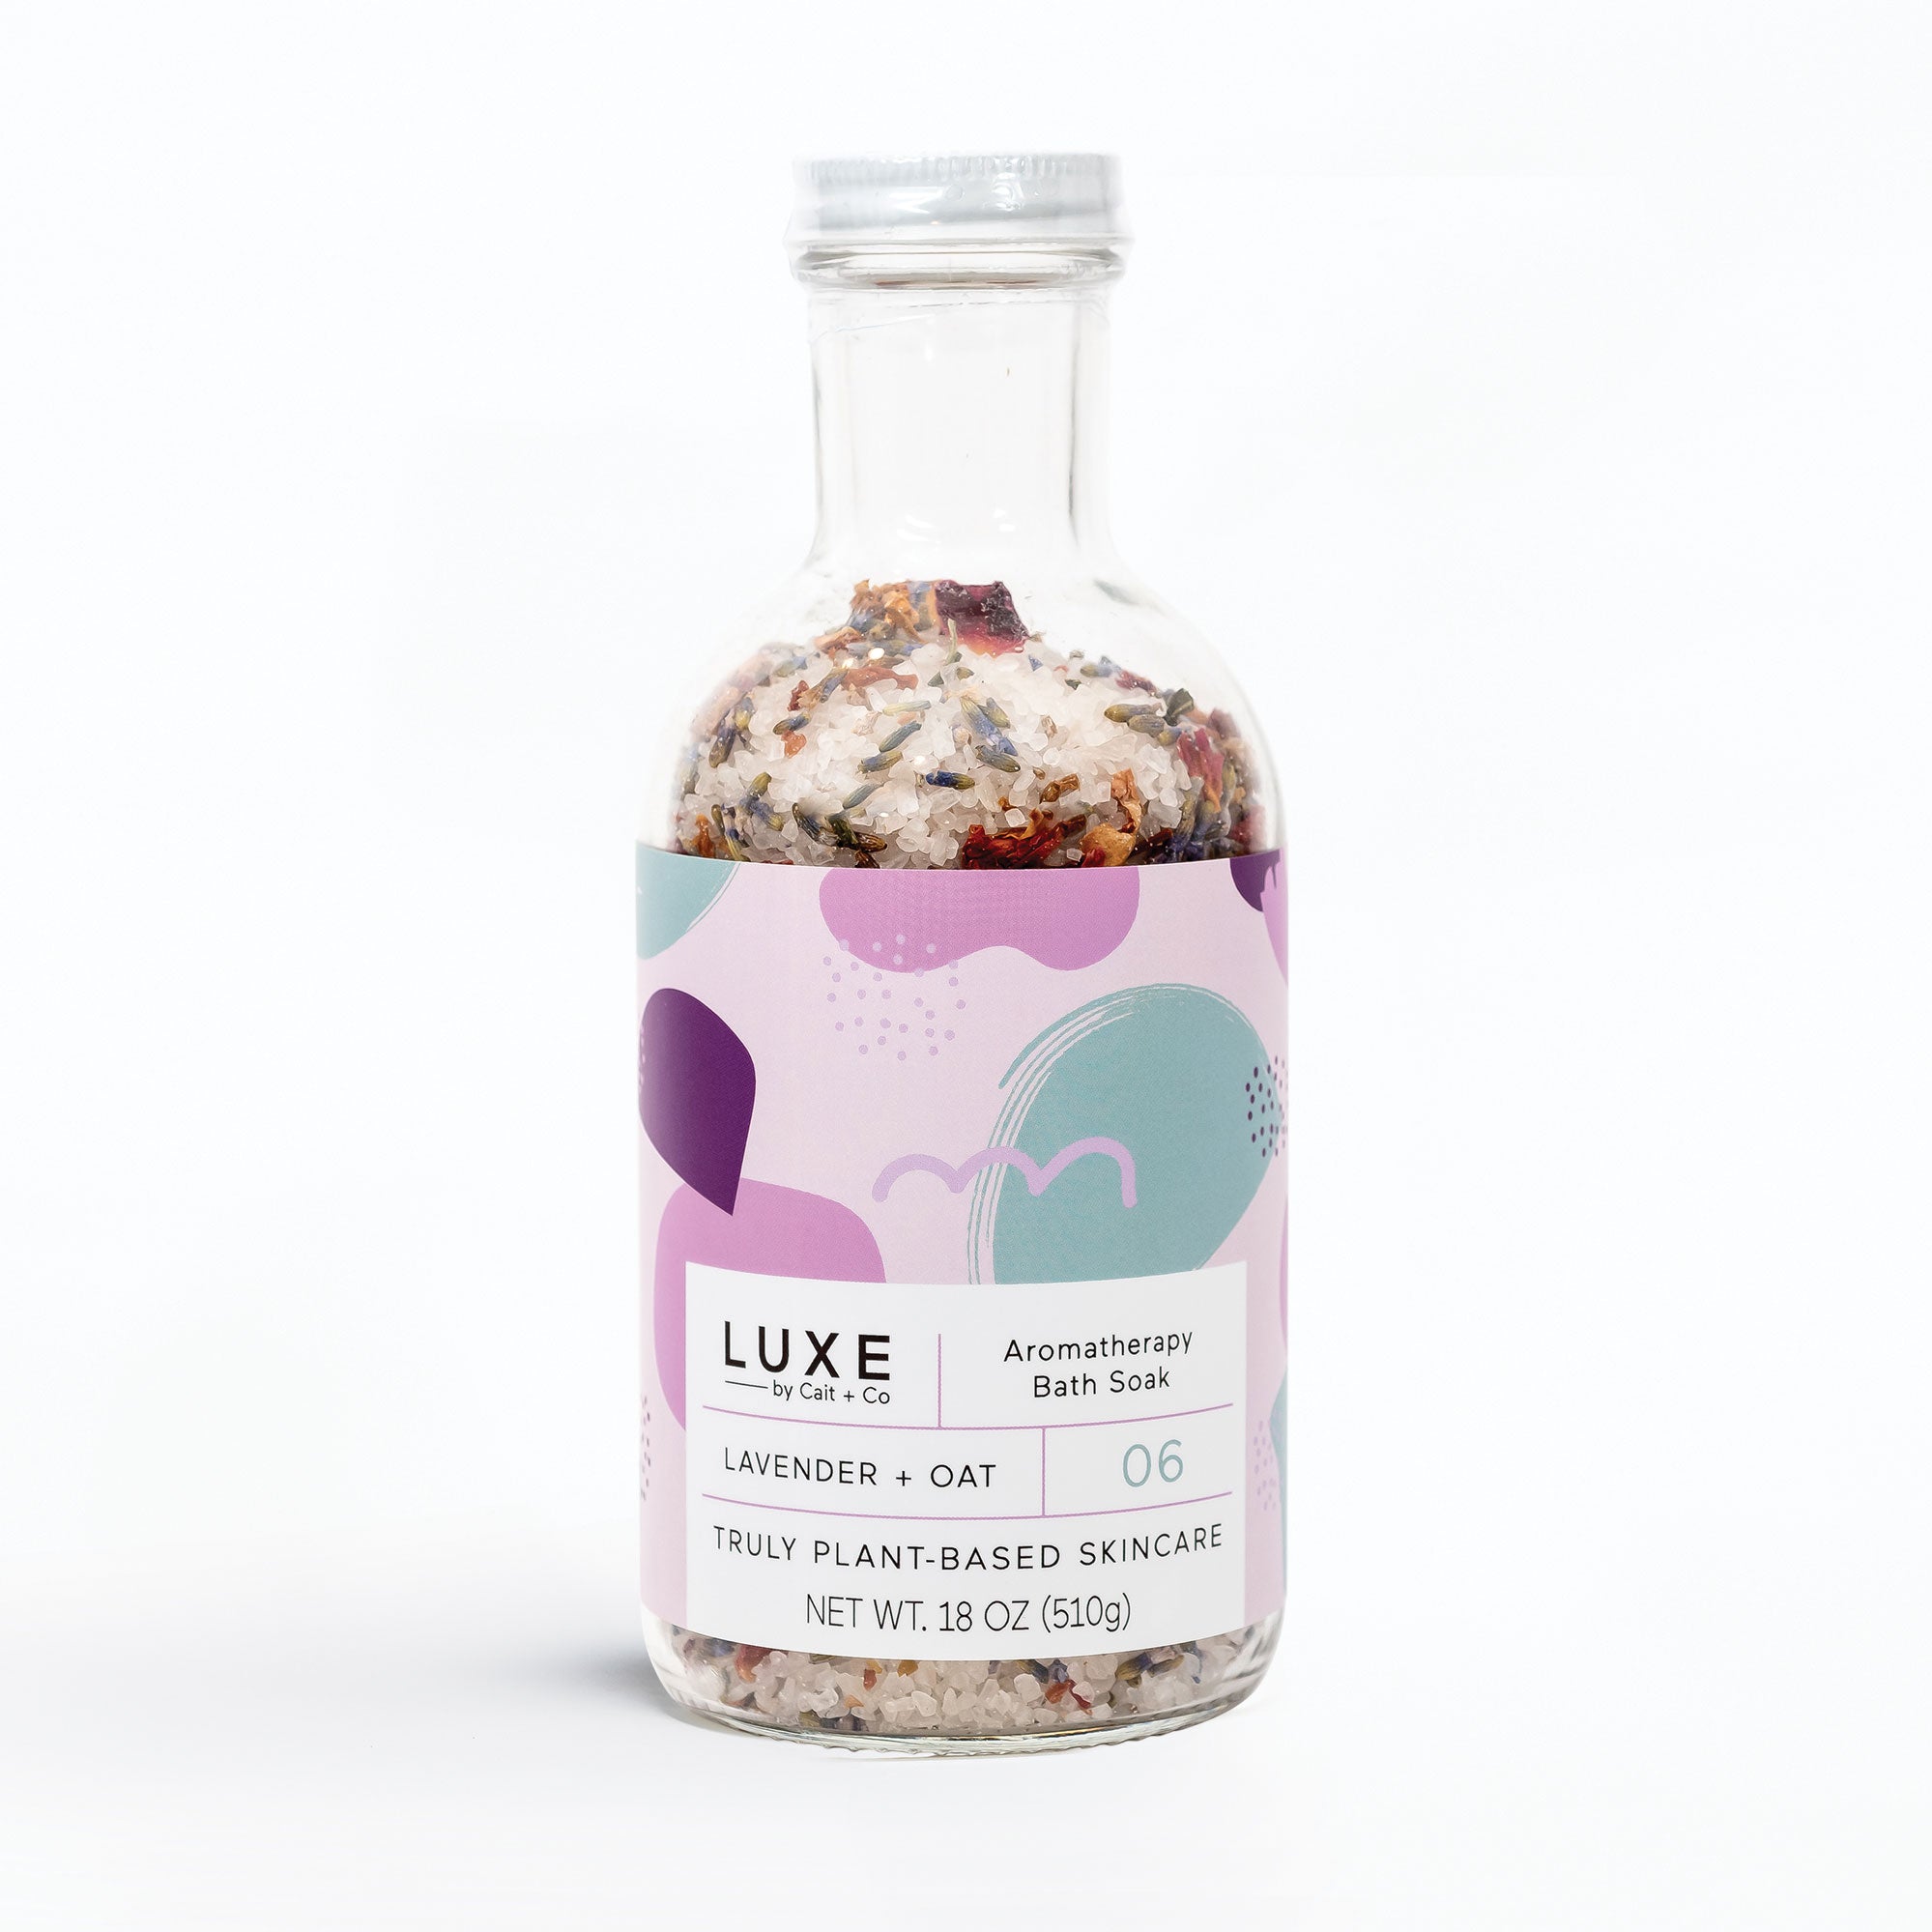 Lavender + Oat Aromatherapy Bath Soak